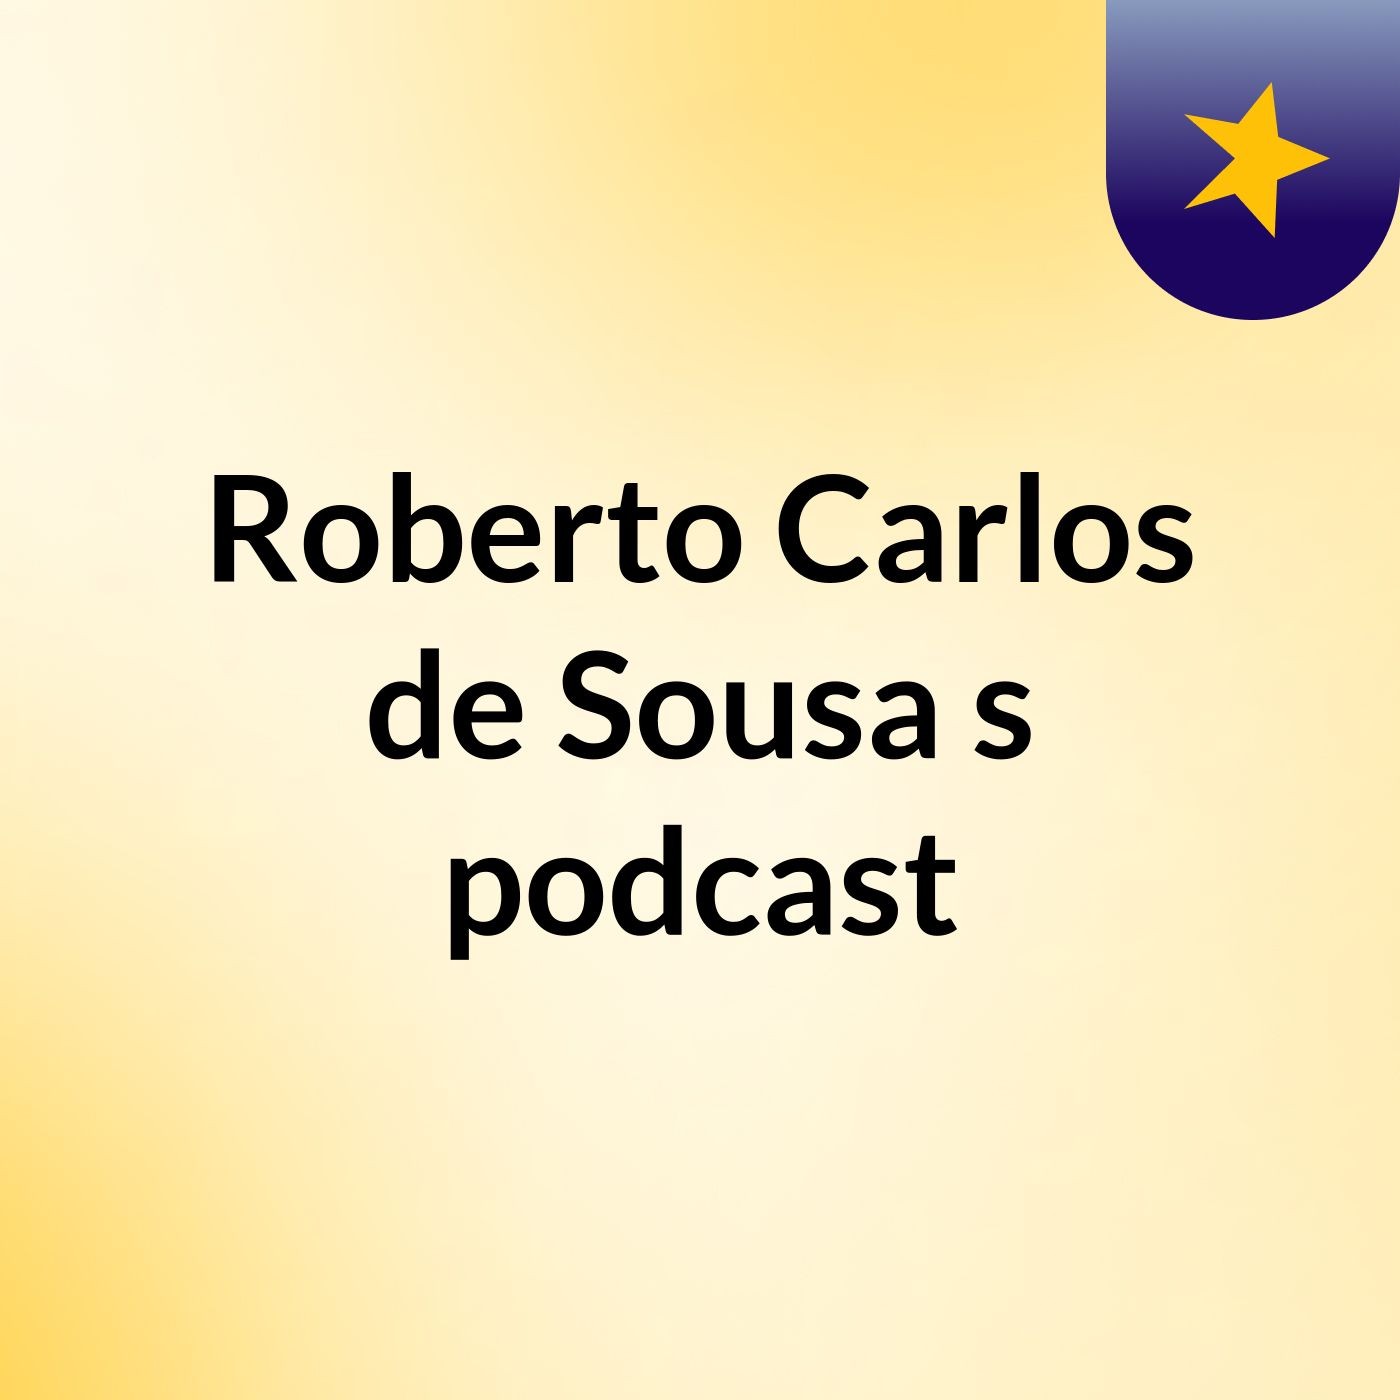 Roberto Carlos de Sousa's podcast